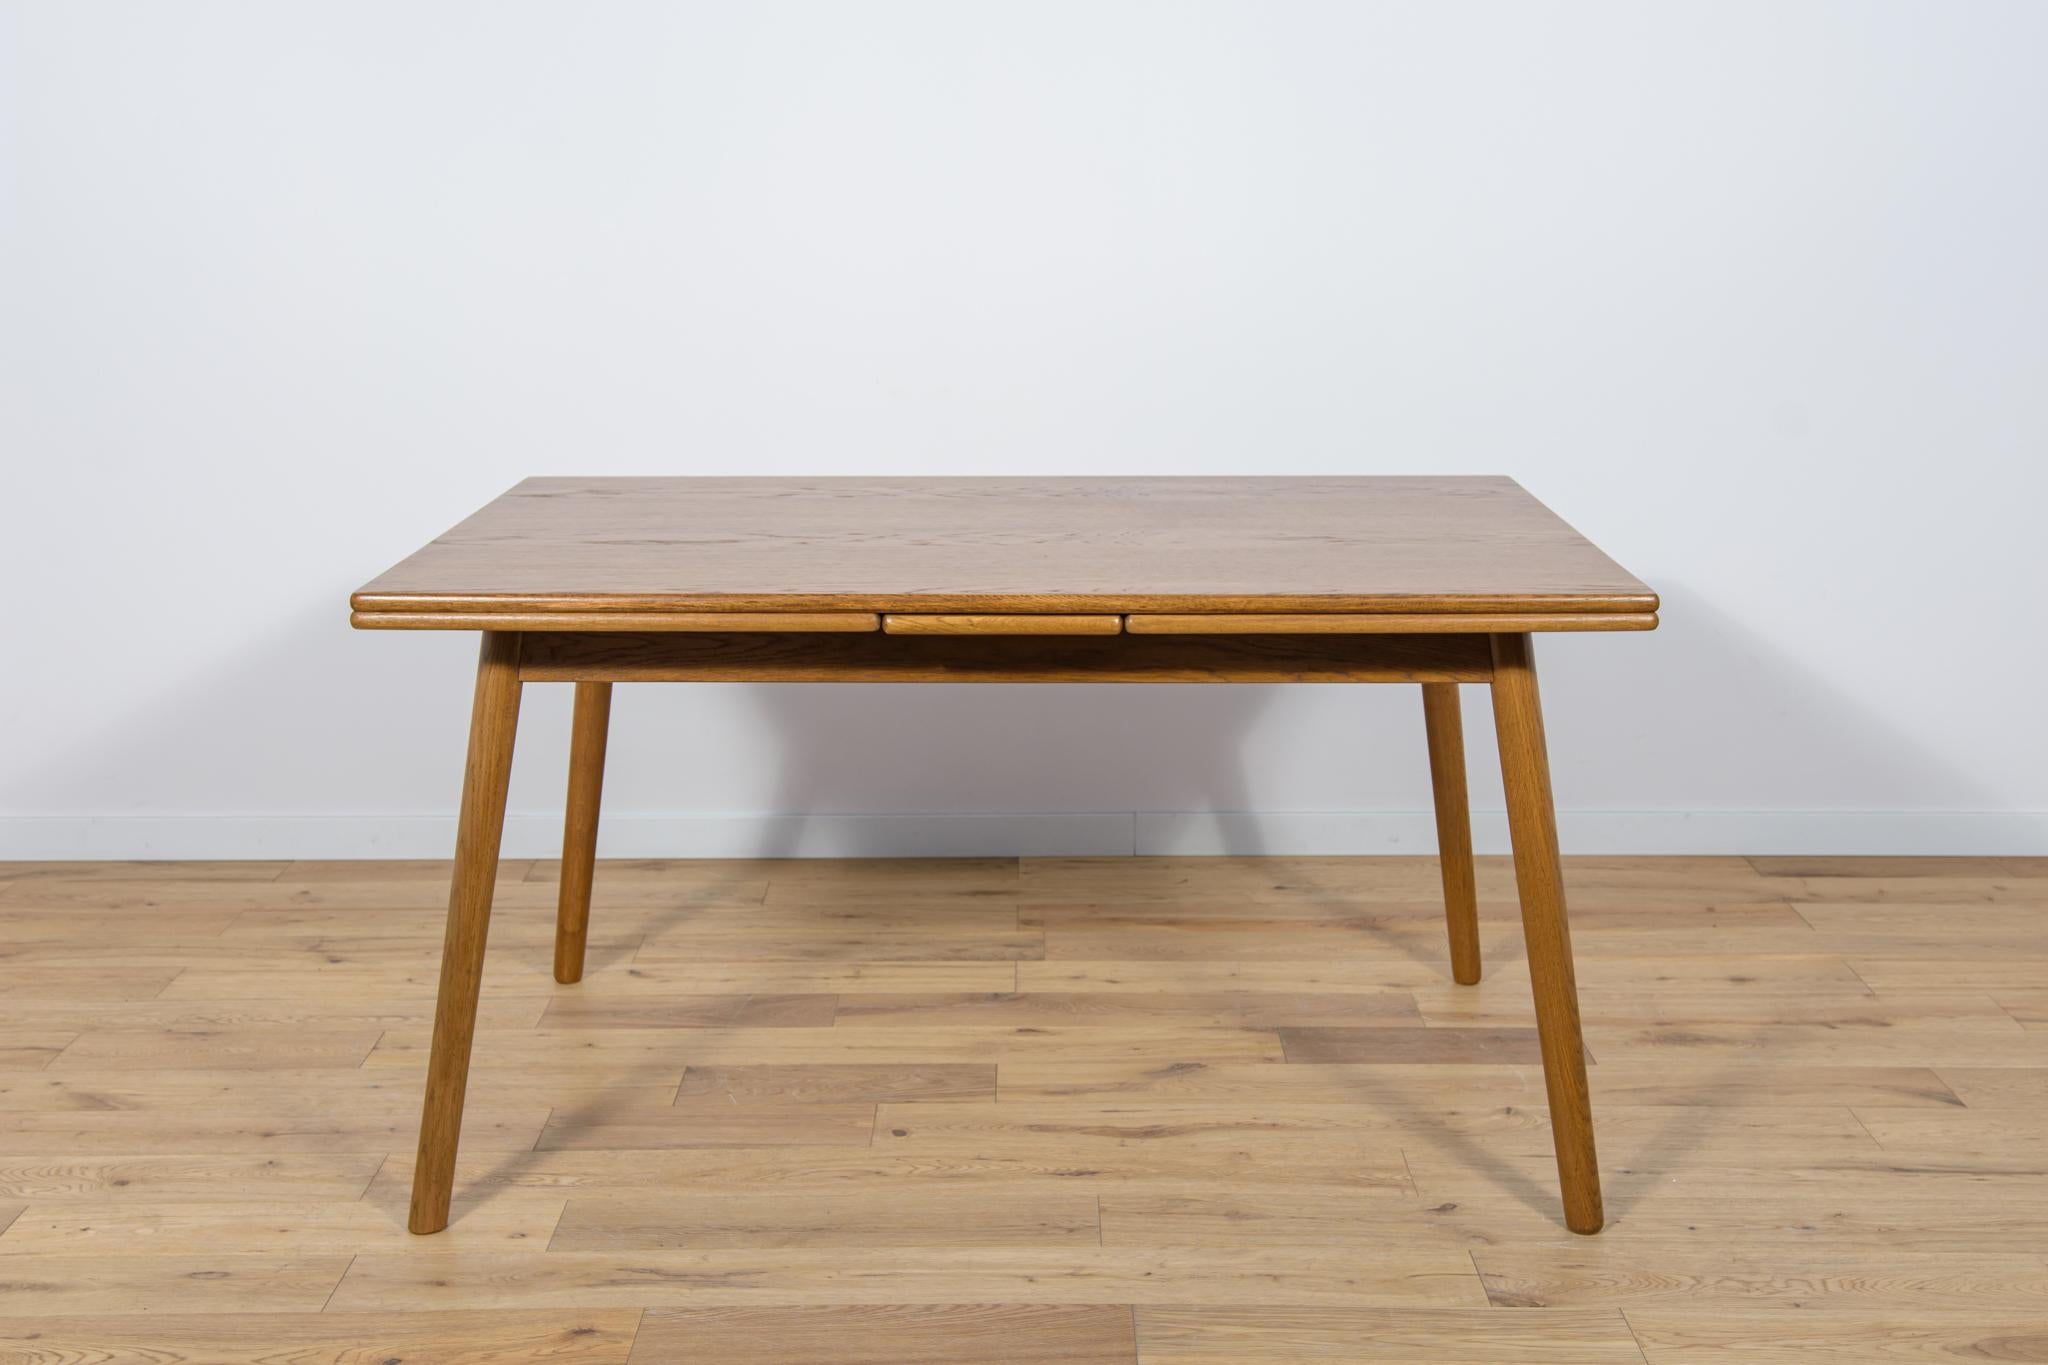 Der ausziehbare Eichenholztisch wurde in den 1960er Jahren in Dänemark hergestellt. Der einzigartige Charakter des Tisches wurde durch die schräg gestellten Beine erreicht. Die Möbel wurden komplett renoviert, von der alten Beschichtung befreit, mit